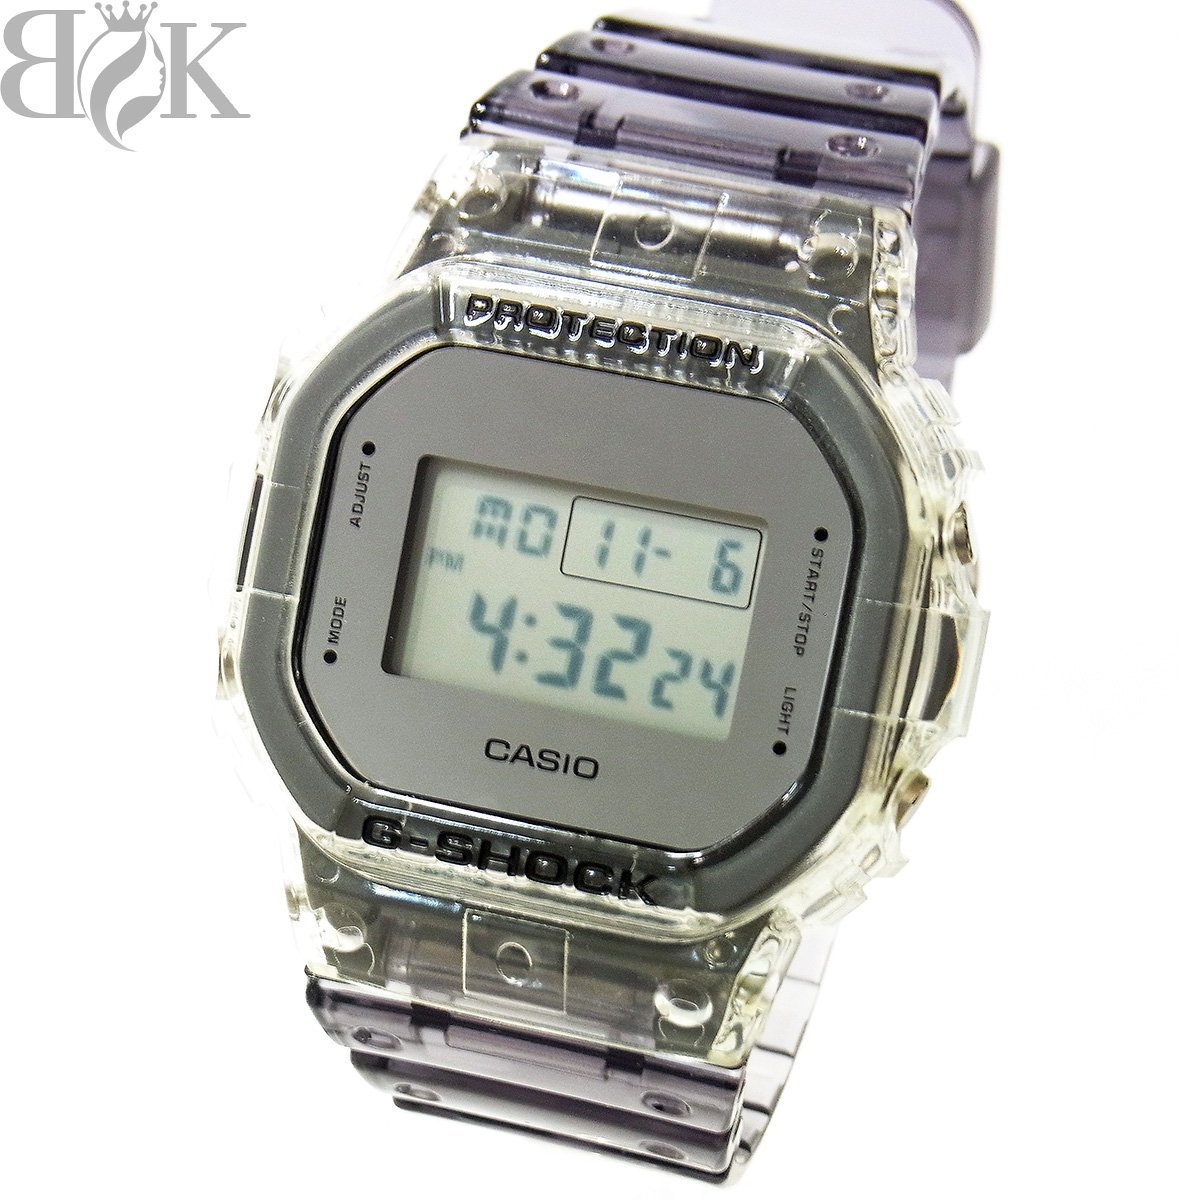 極美品 カシオ G-SHOCK DW-5600SK メンズ 腕時計 デジタル タフソーラー スケルトン シルバー グレー系 動作品 〓